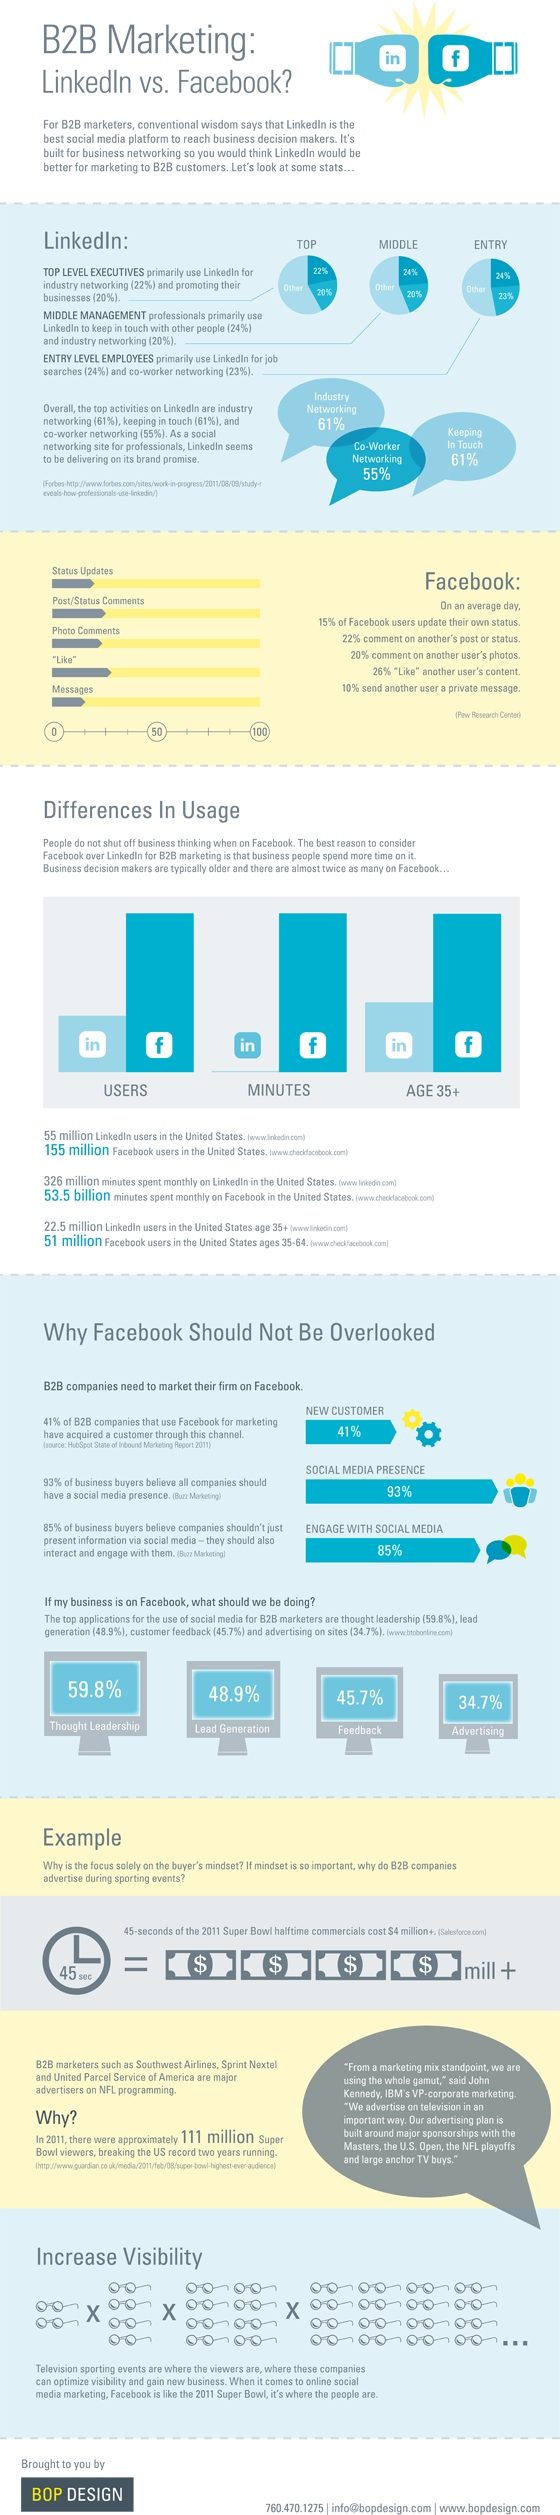 LinkedIn ou Facebook : lequel est le plus efficace en B2B marketing ?